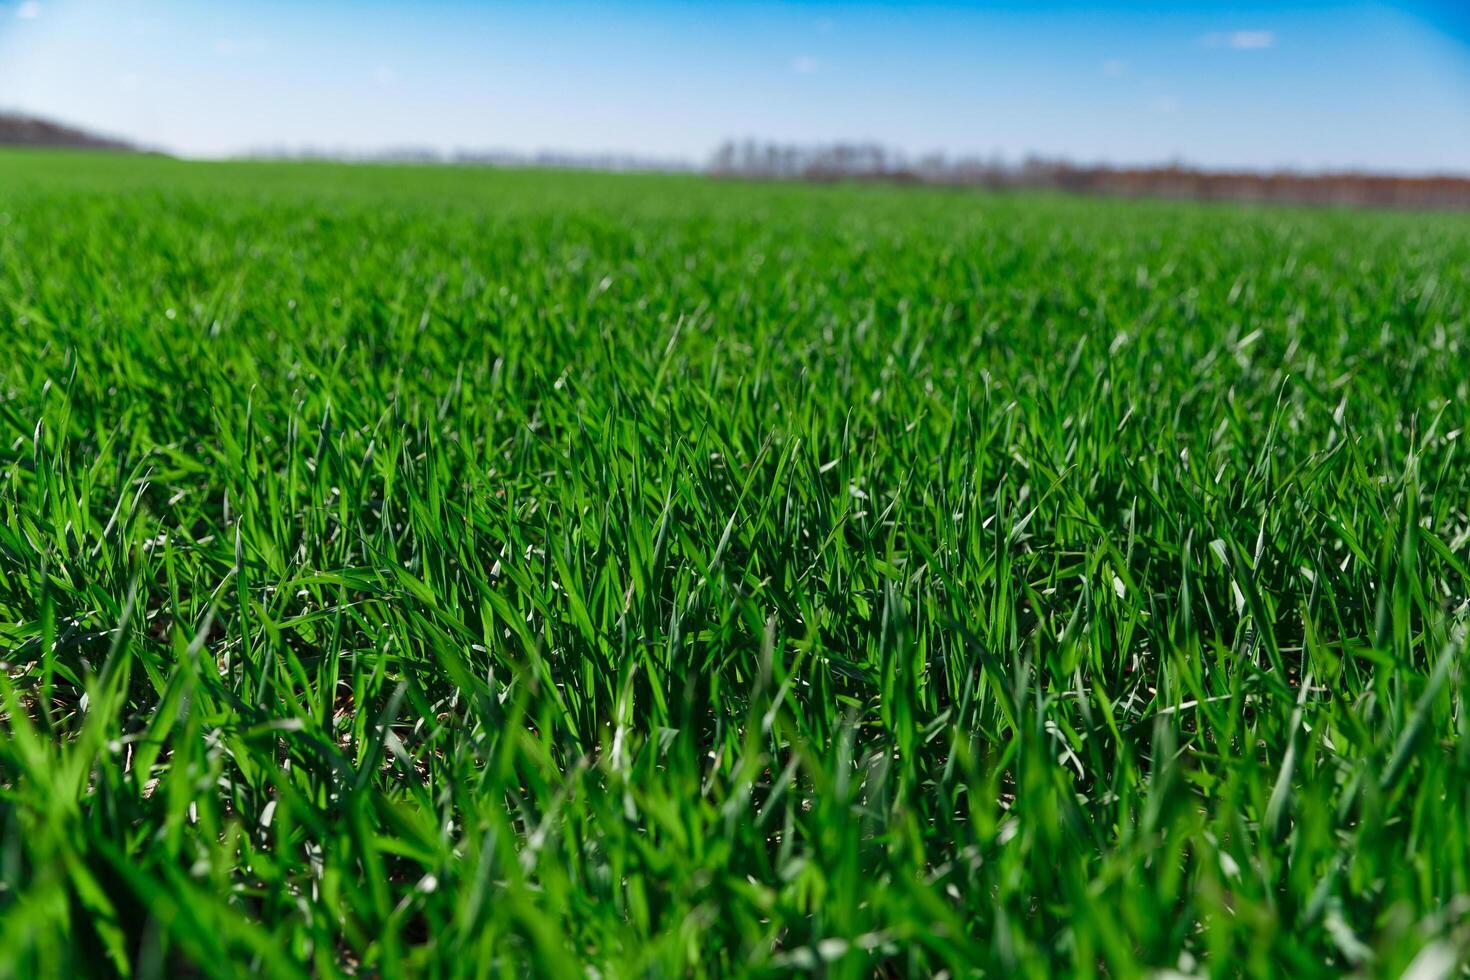 spring grass on the field, green grass, grass grows on the field, field in spring photo